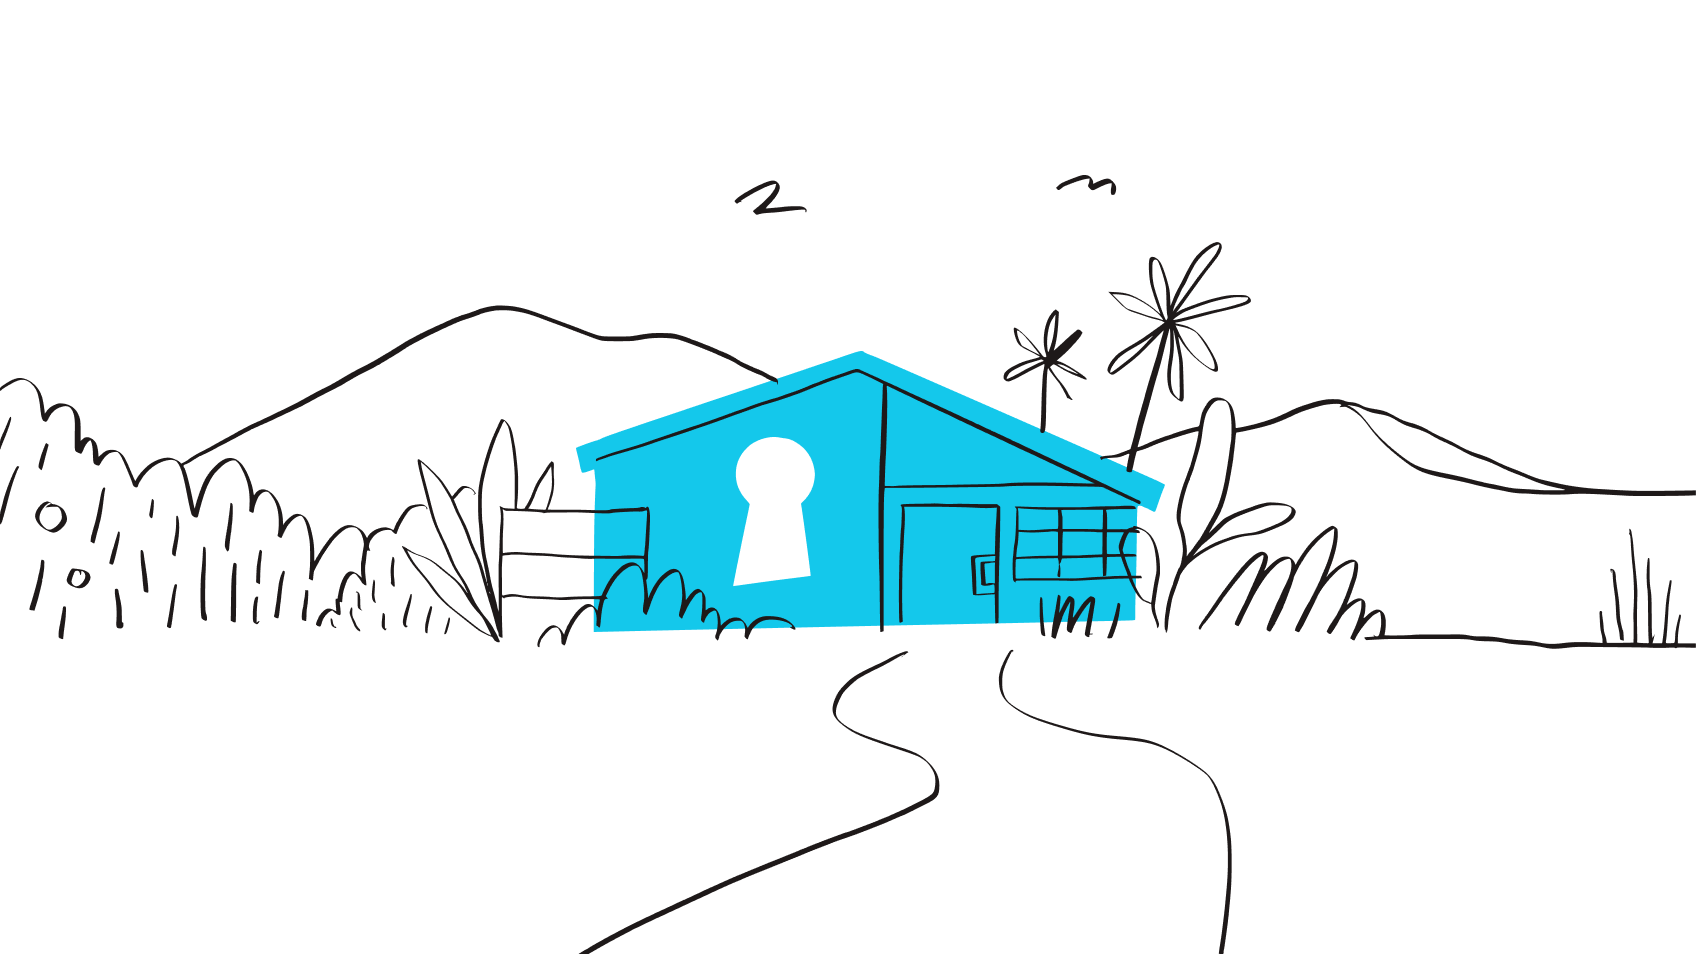 Ilustrasi rumah dengan gembok, melambangkan manfaat keamanan karena memiliki kata sandi yang kuat.